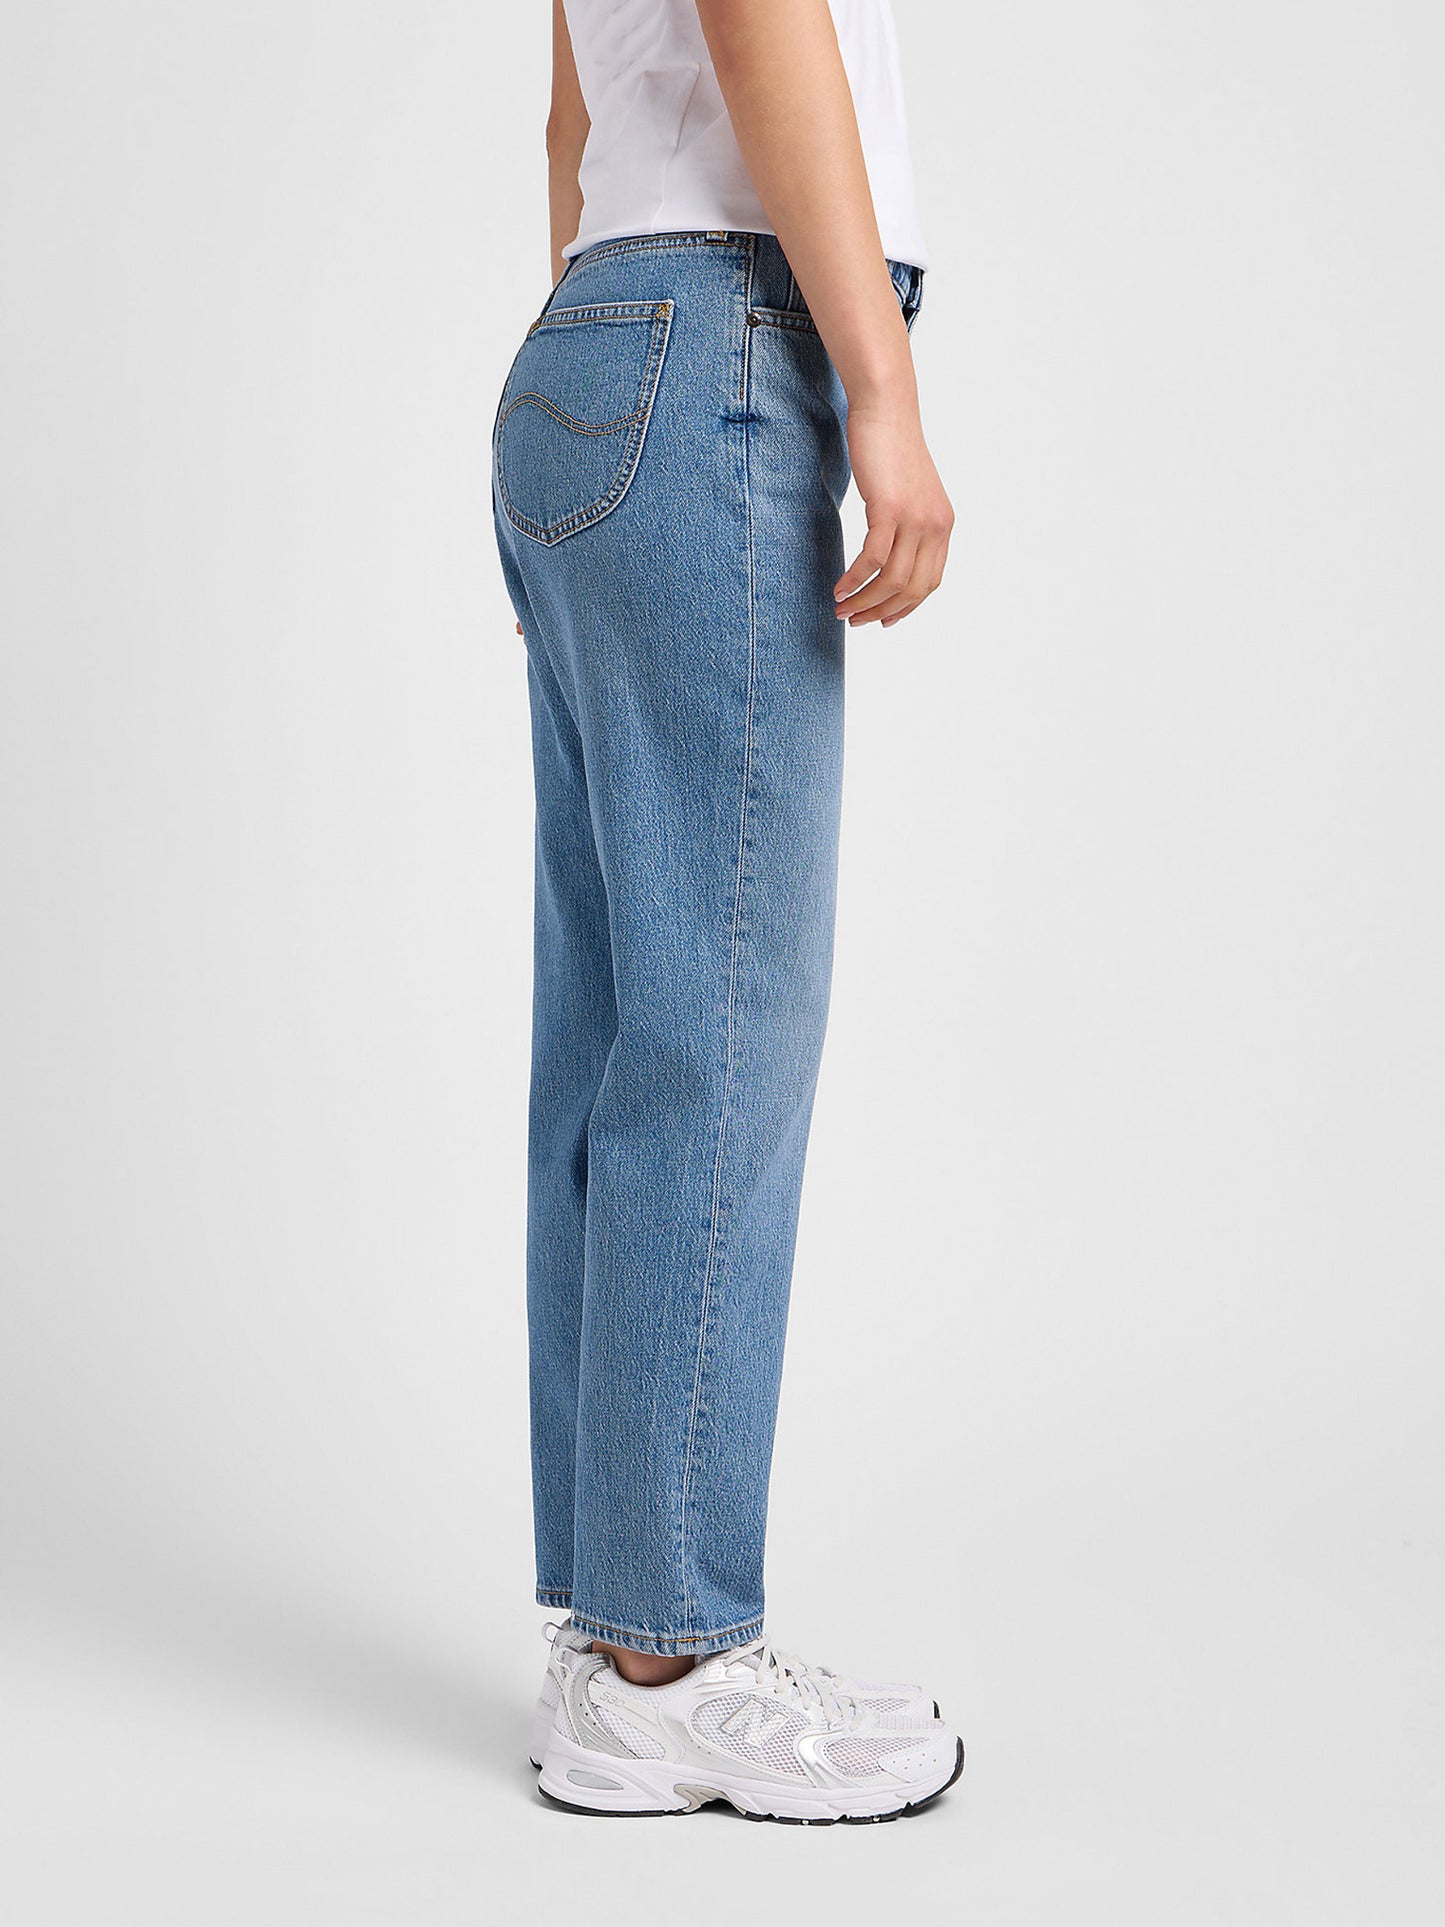 Γυναικείο παντελόνι τζιν CAROL IN MID SOHO L30UMWKP | L30UMWKP